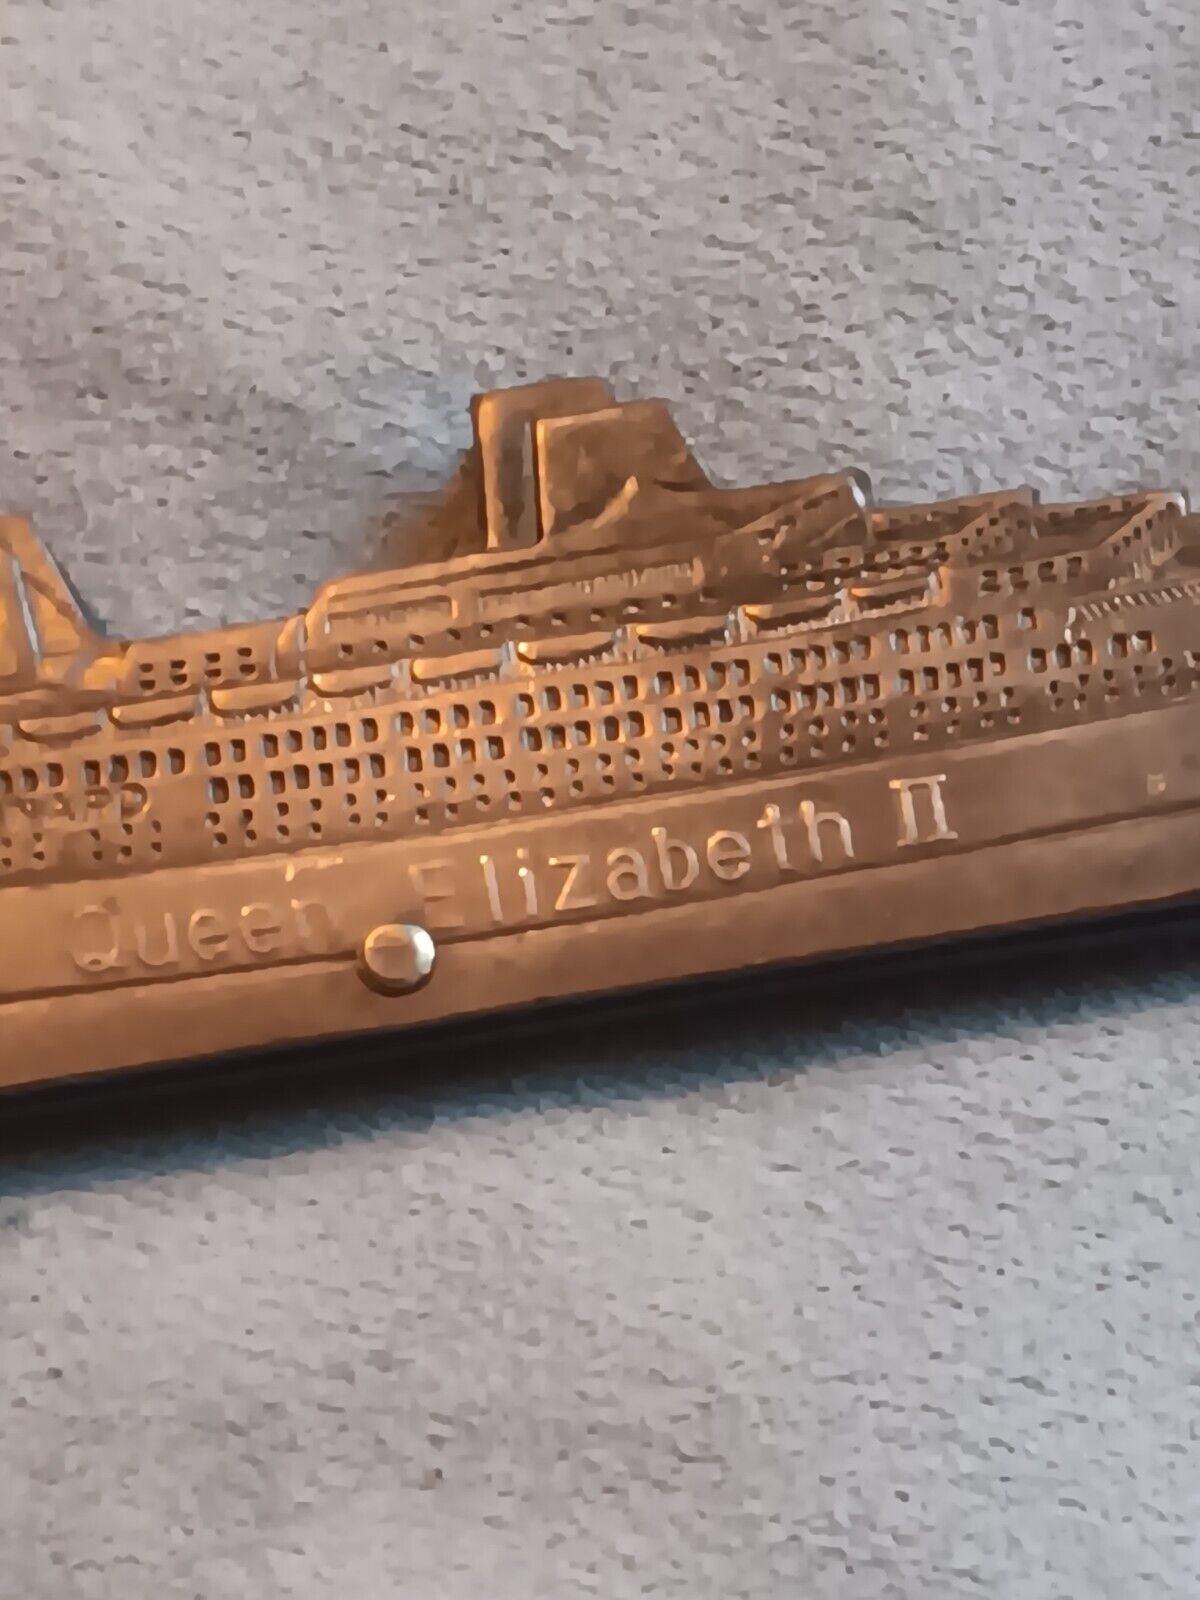 Vintage Figural Pocket Knife QE2 Queen Elizabeth II Ship Japan